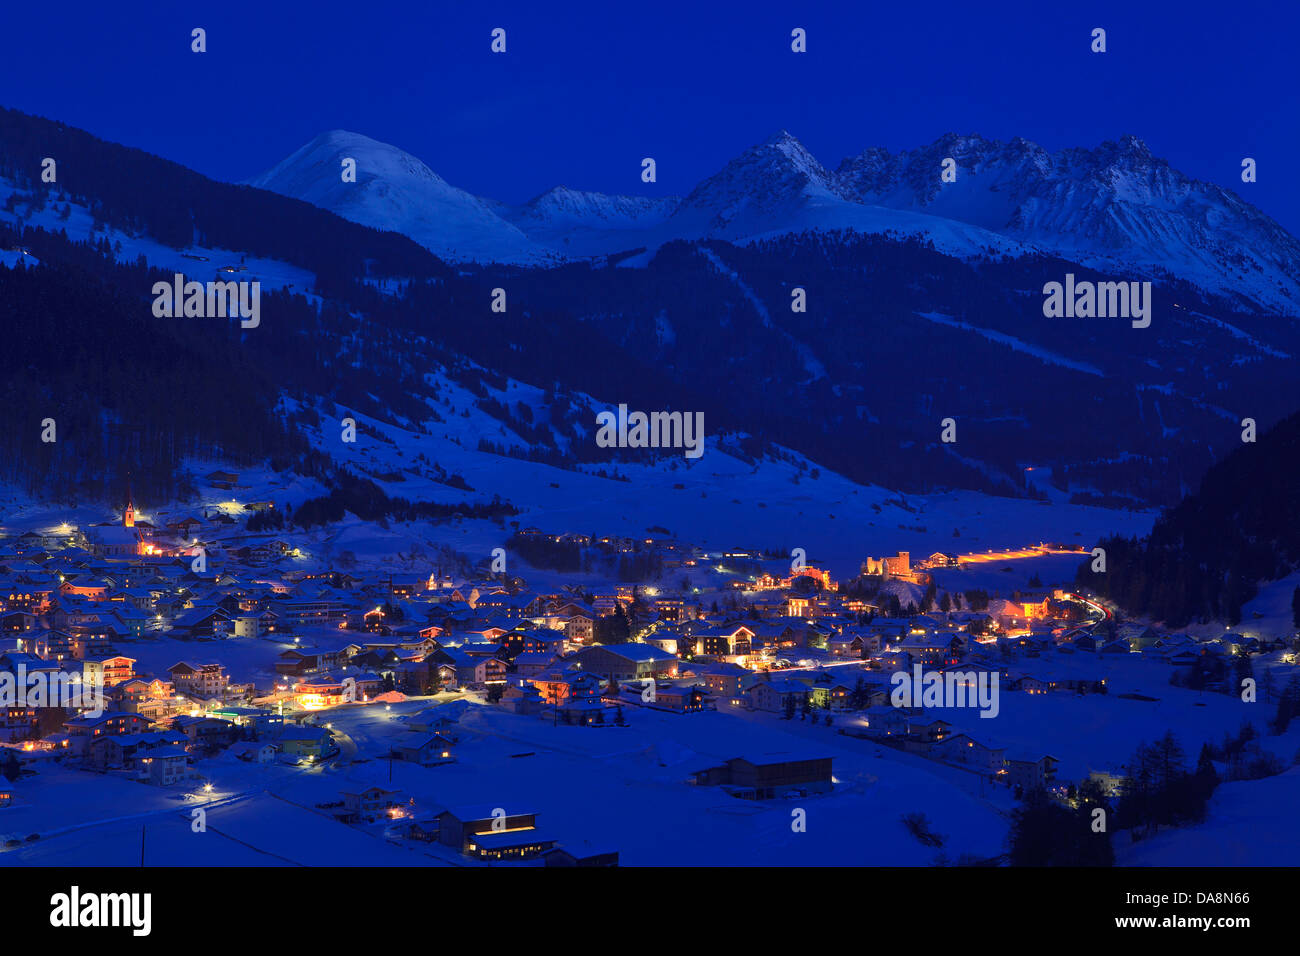 Austria, Europe, Tyrol, Oberinntal, Nauders, Oberes Gericht, Reschenpass, winter, evening, dusk, twilight, night, lights, touris Stock Photo